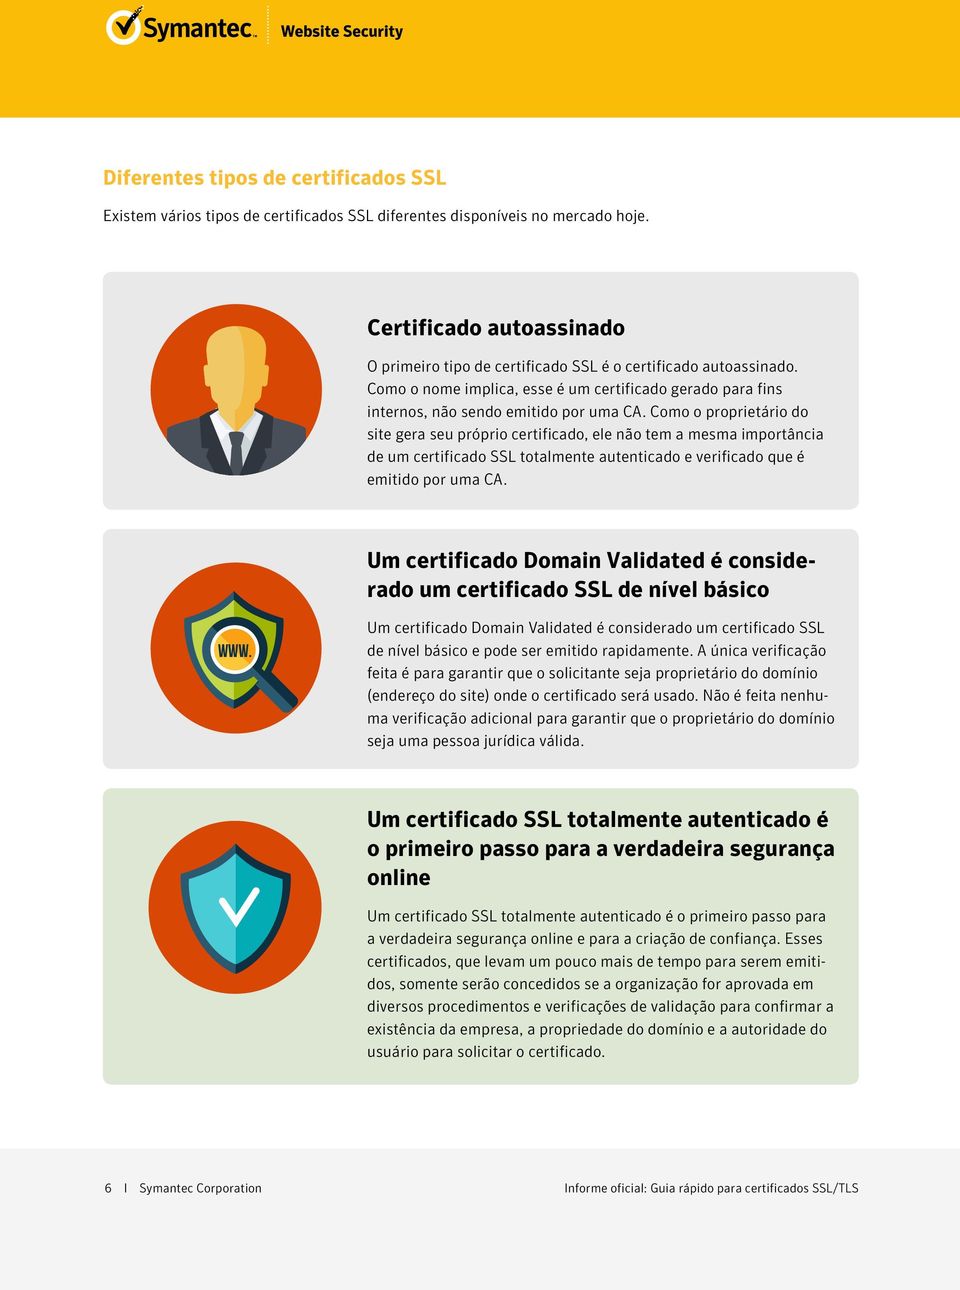 Como o proprietário do site gera seu próprio certificado, ele não tem a mesma importância de um certificado SSL totalmente autenticado e verificado que é emitido por uma CA.